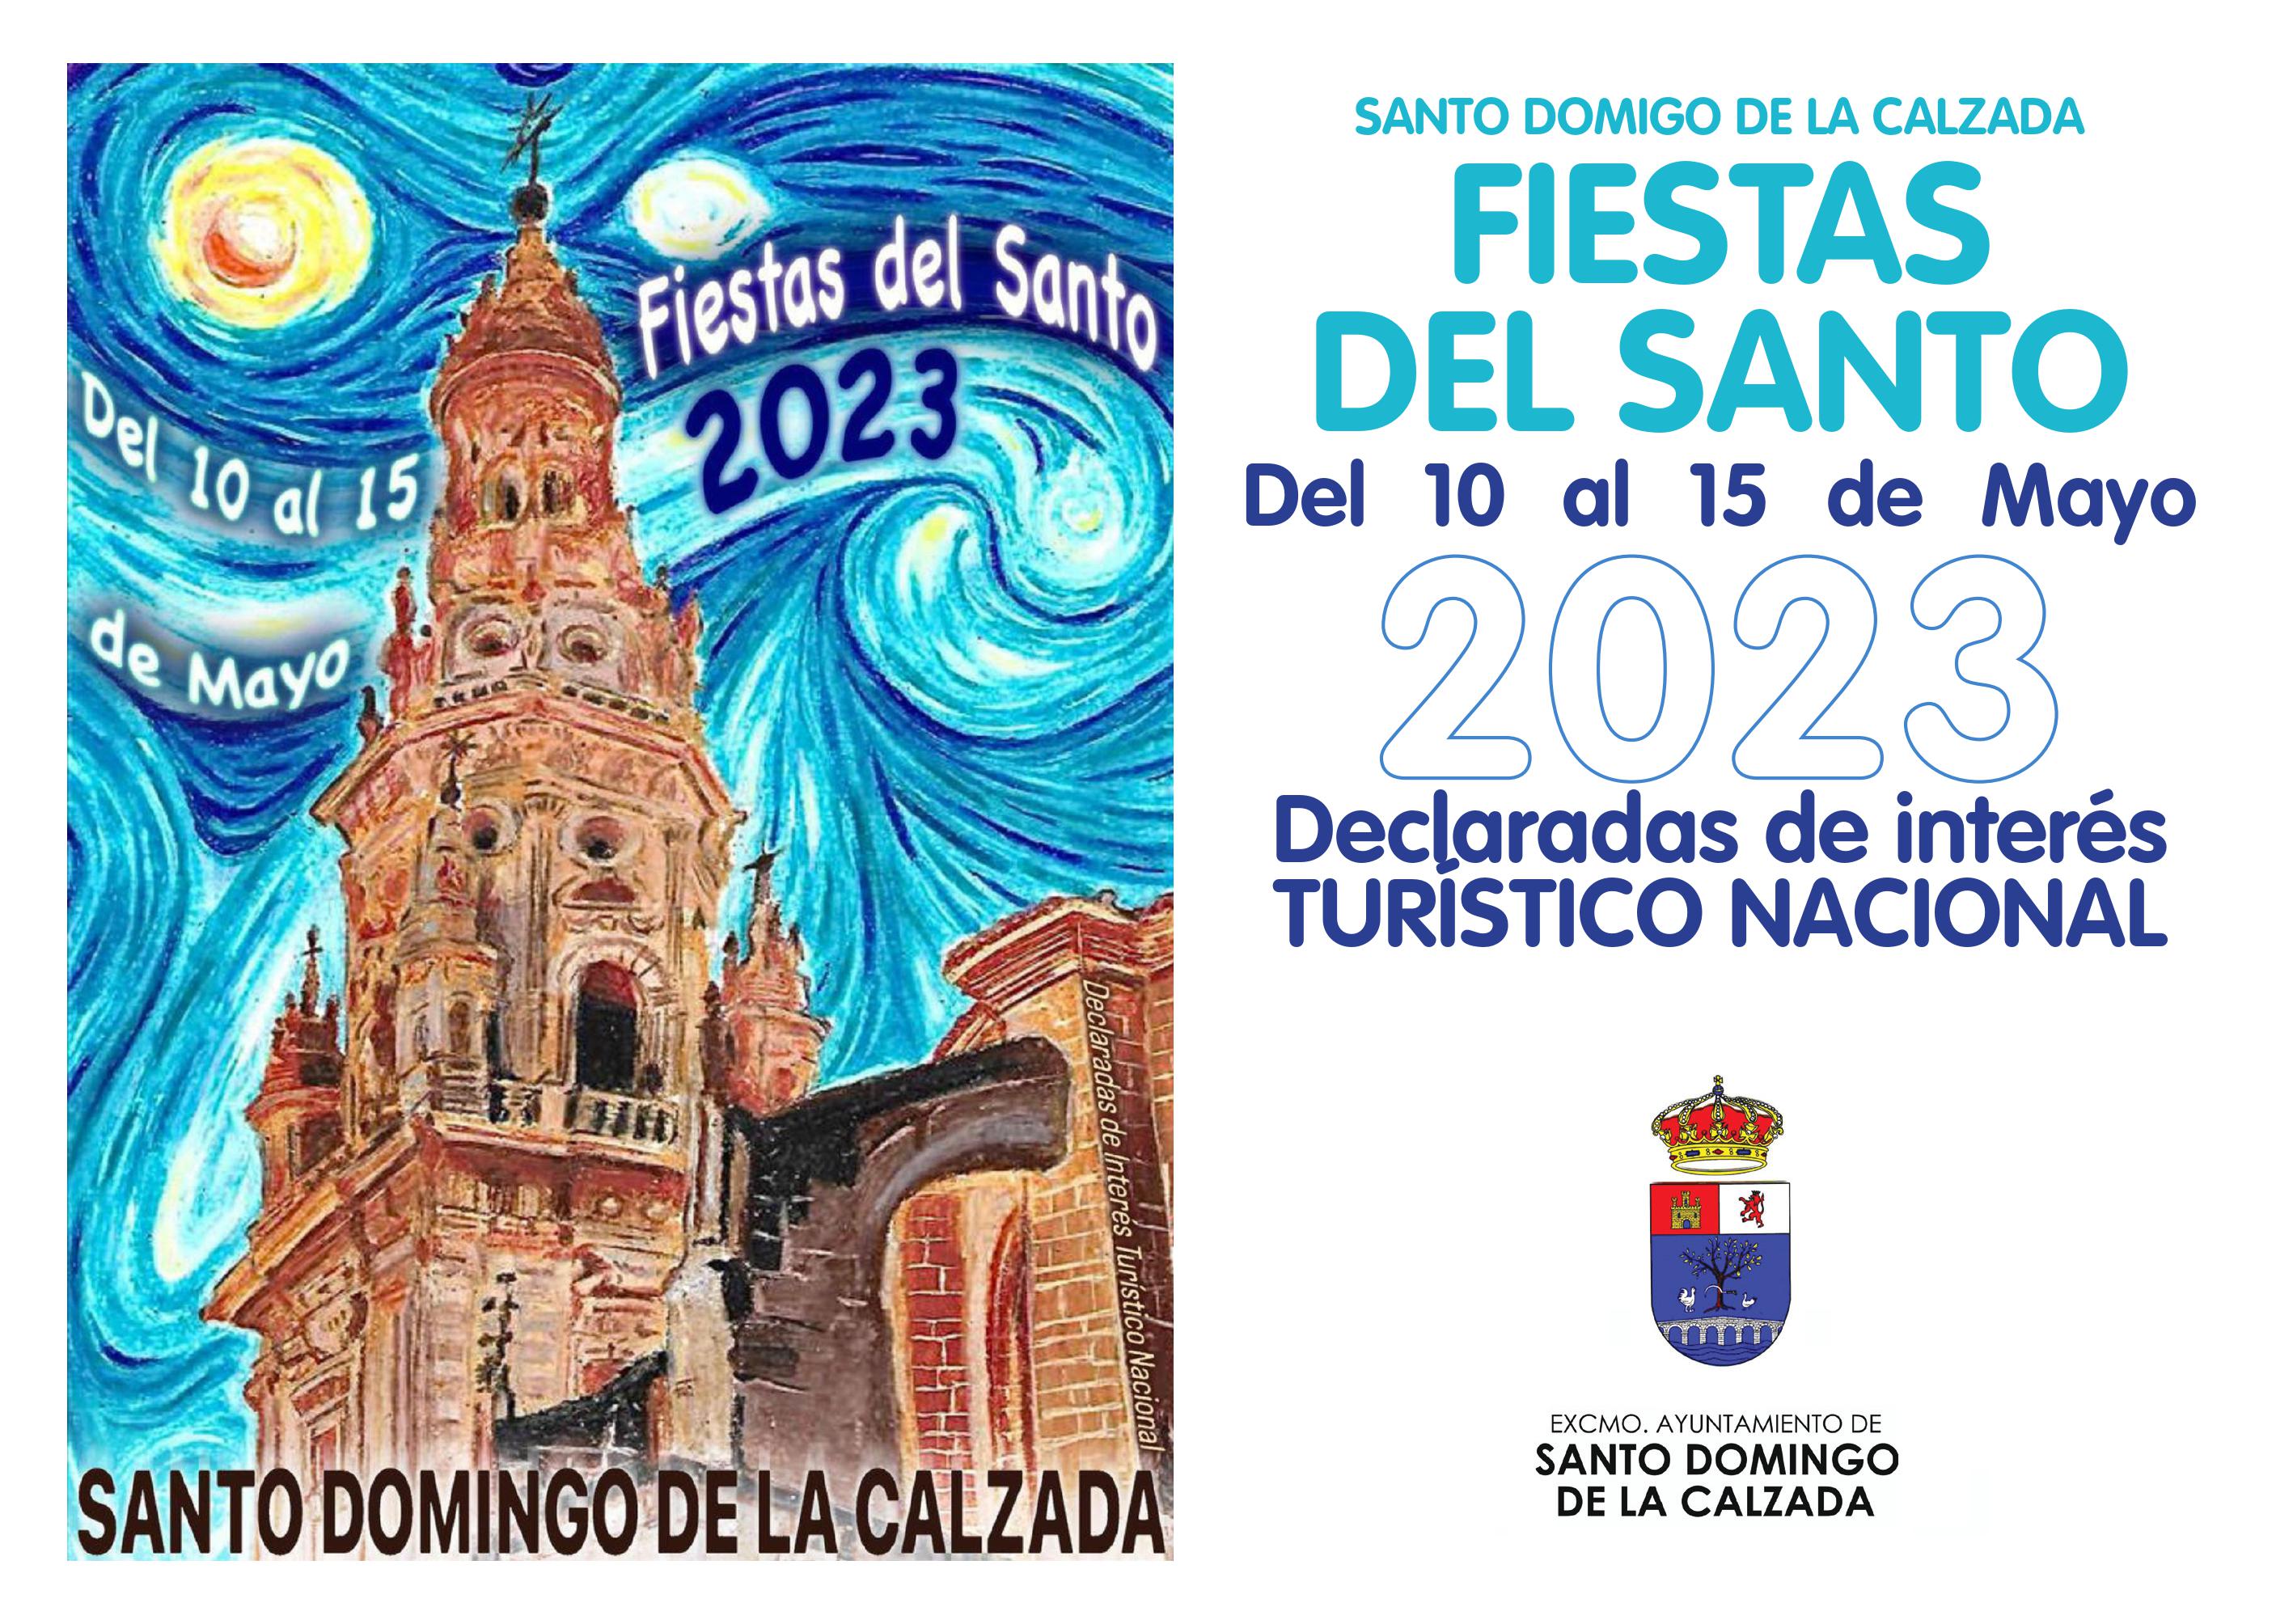 Fiestas en Santo Domingo de la Calzada Fiestas del Santo